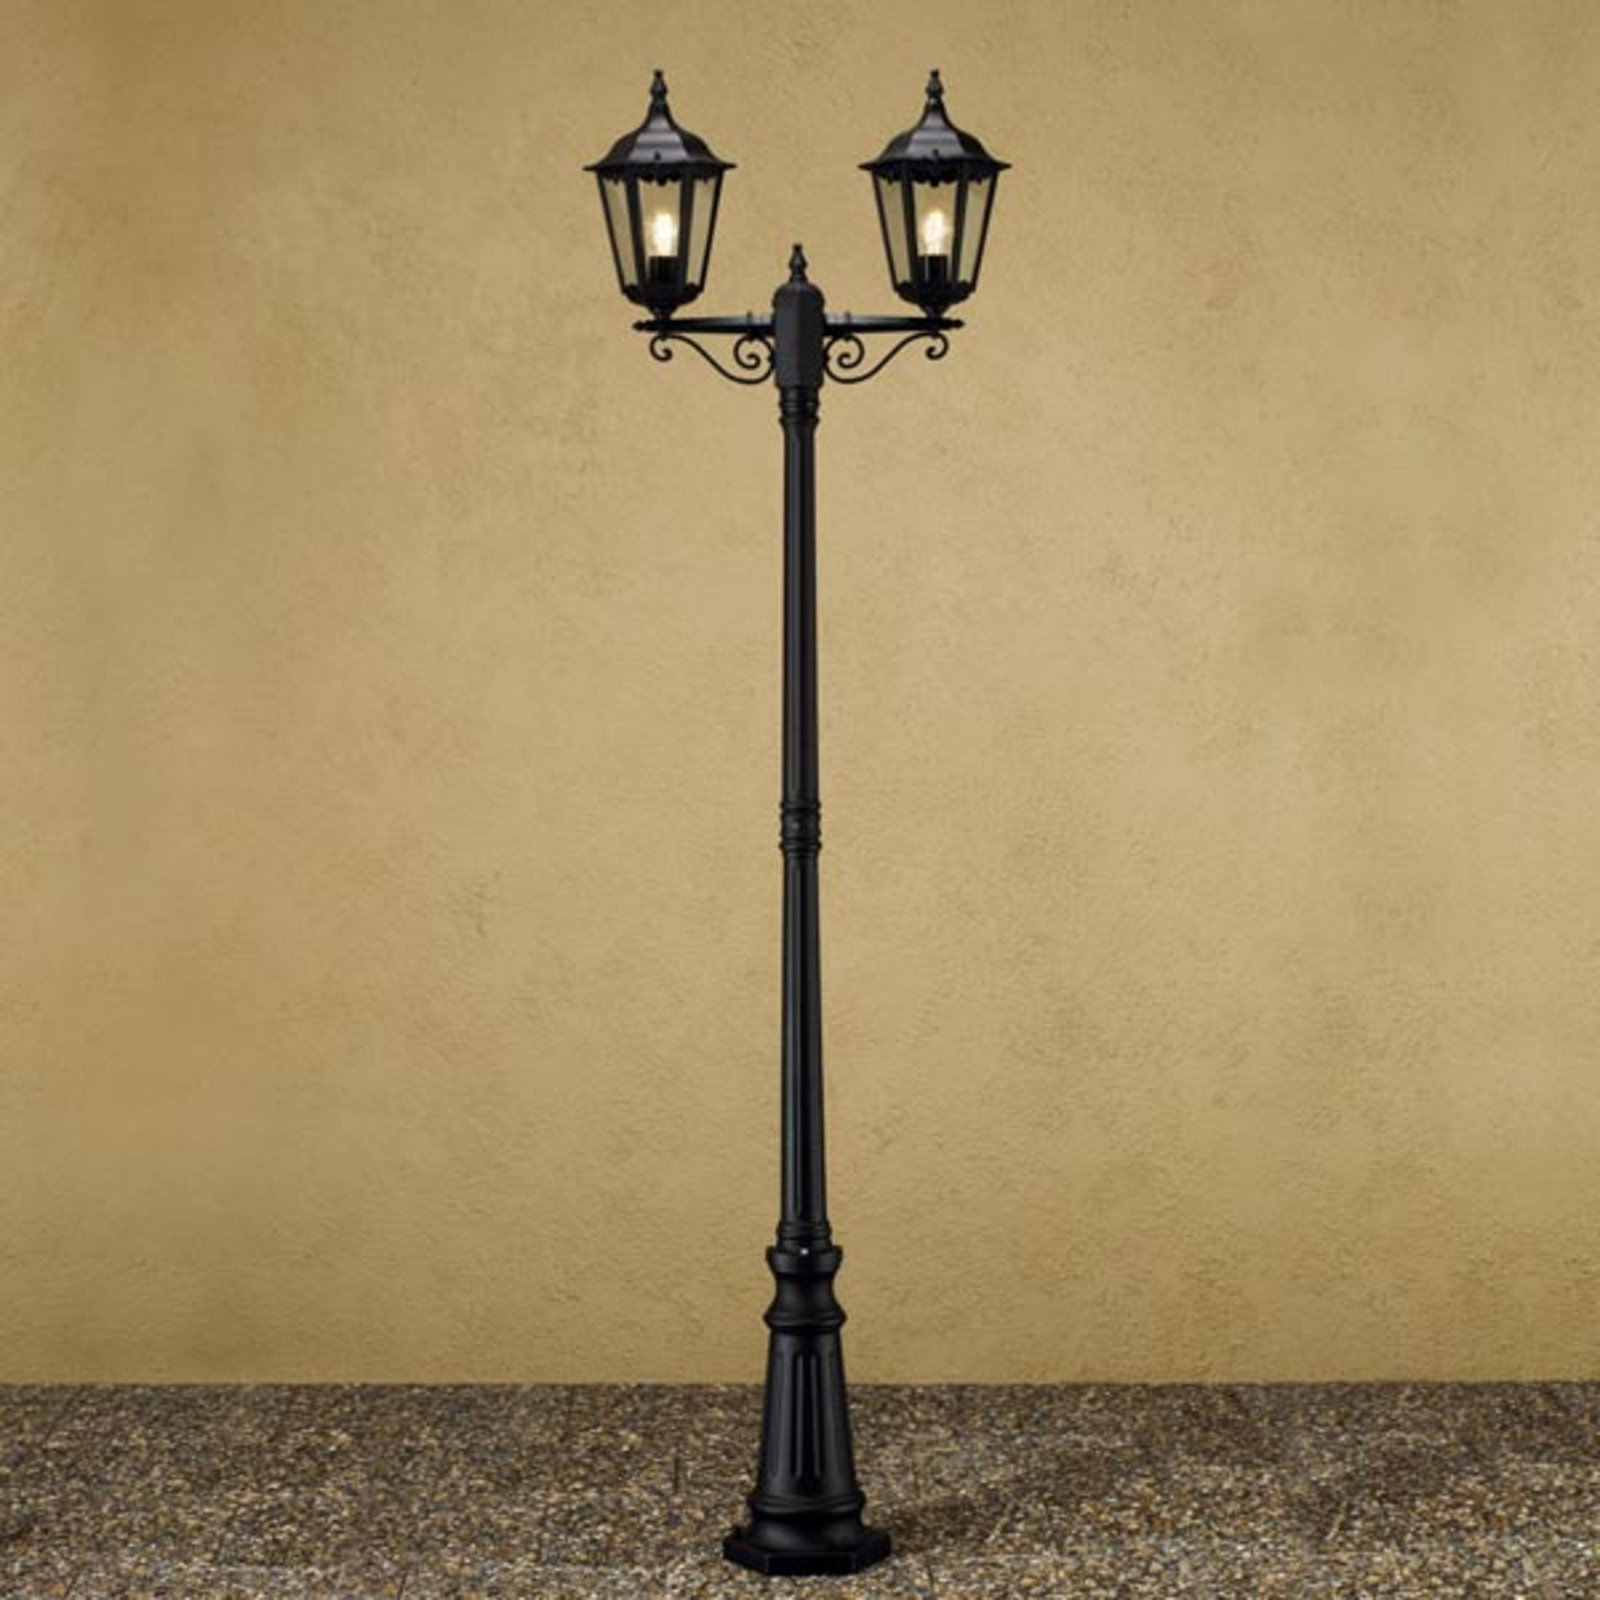 Stožárové svítidlo Firenze, 2 lucerny, černé